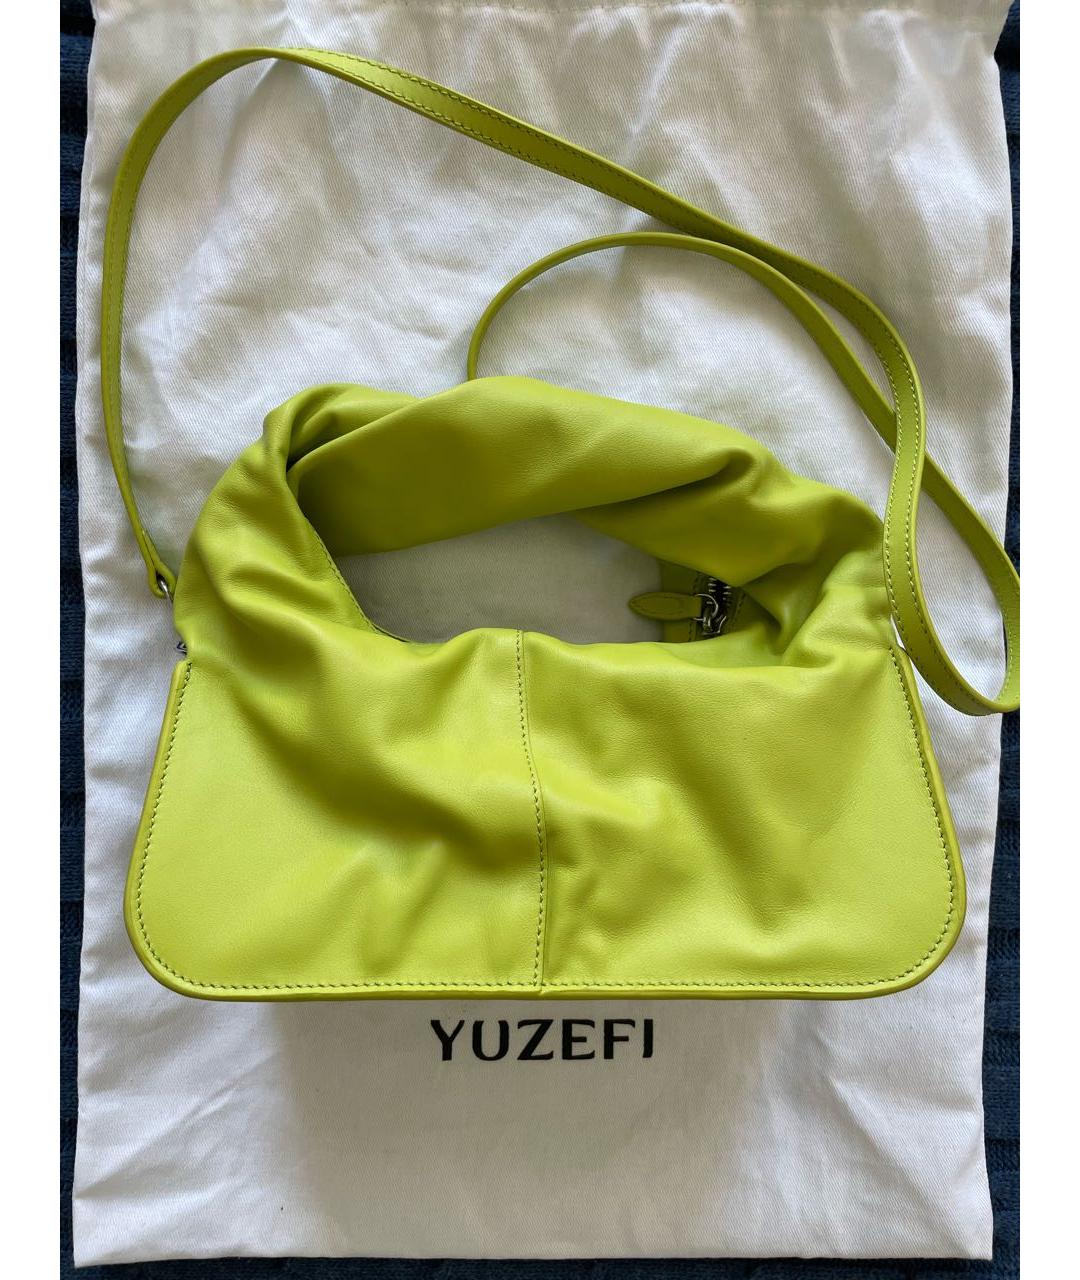 YUZEFI Салатовая кожаная сумка с короткими ручками, фото 2